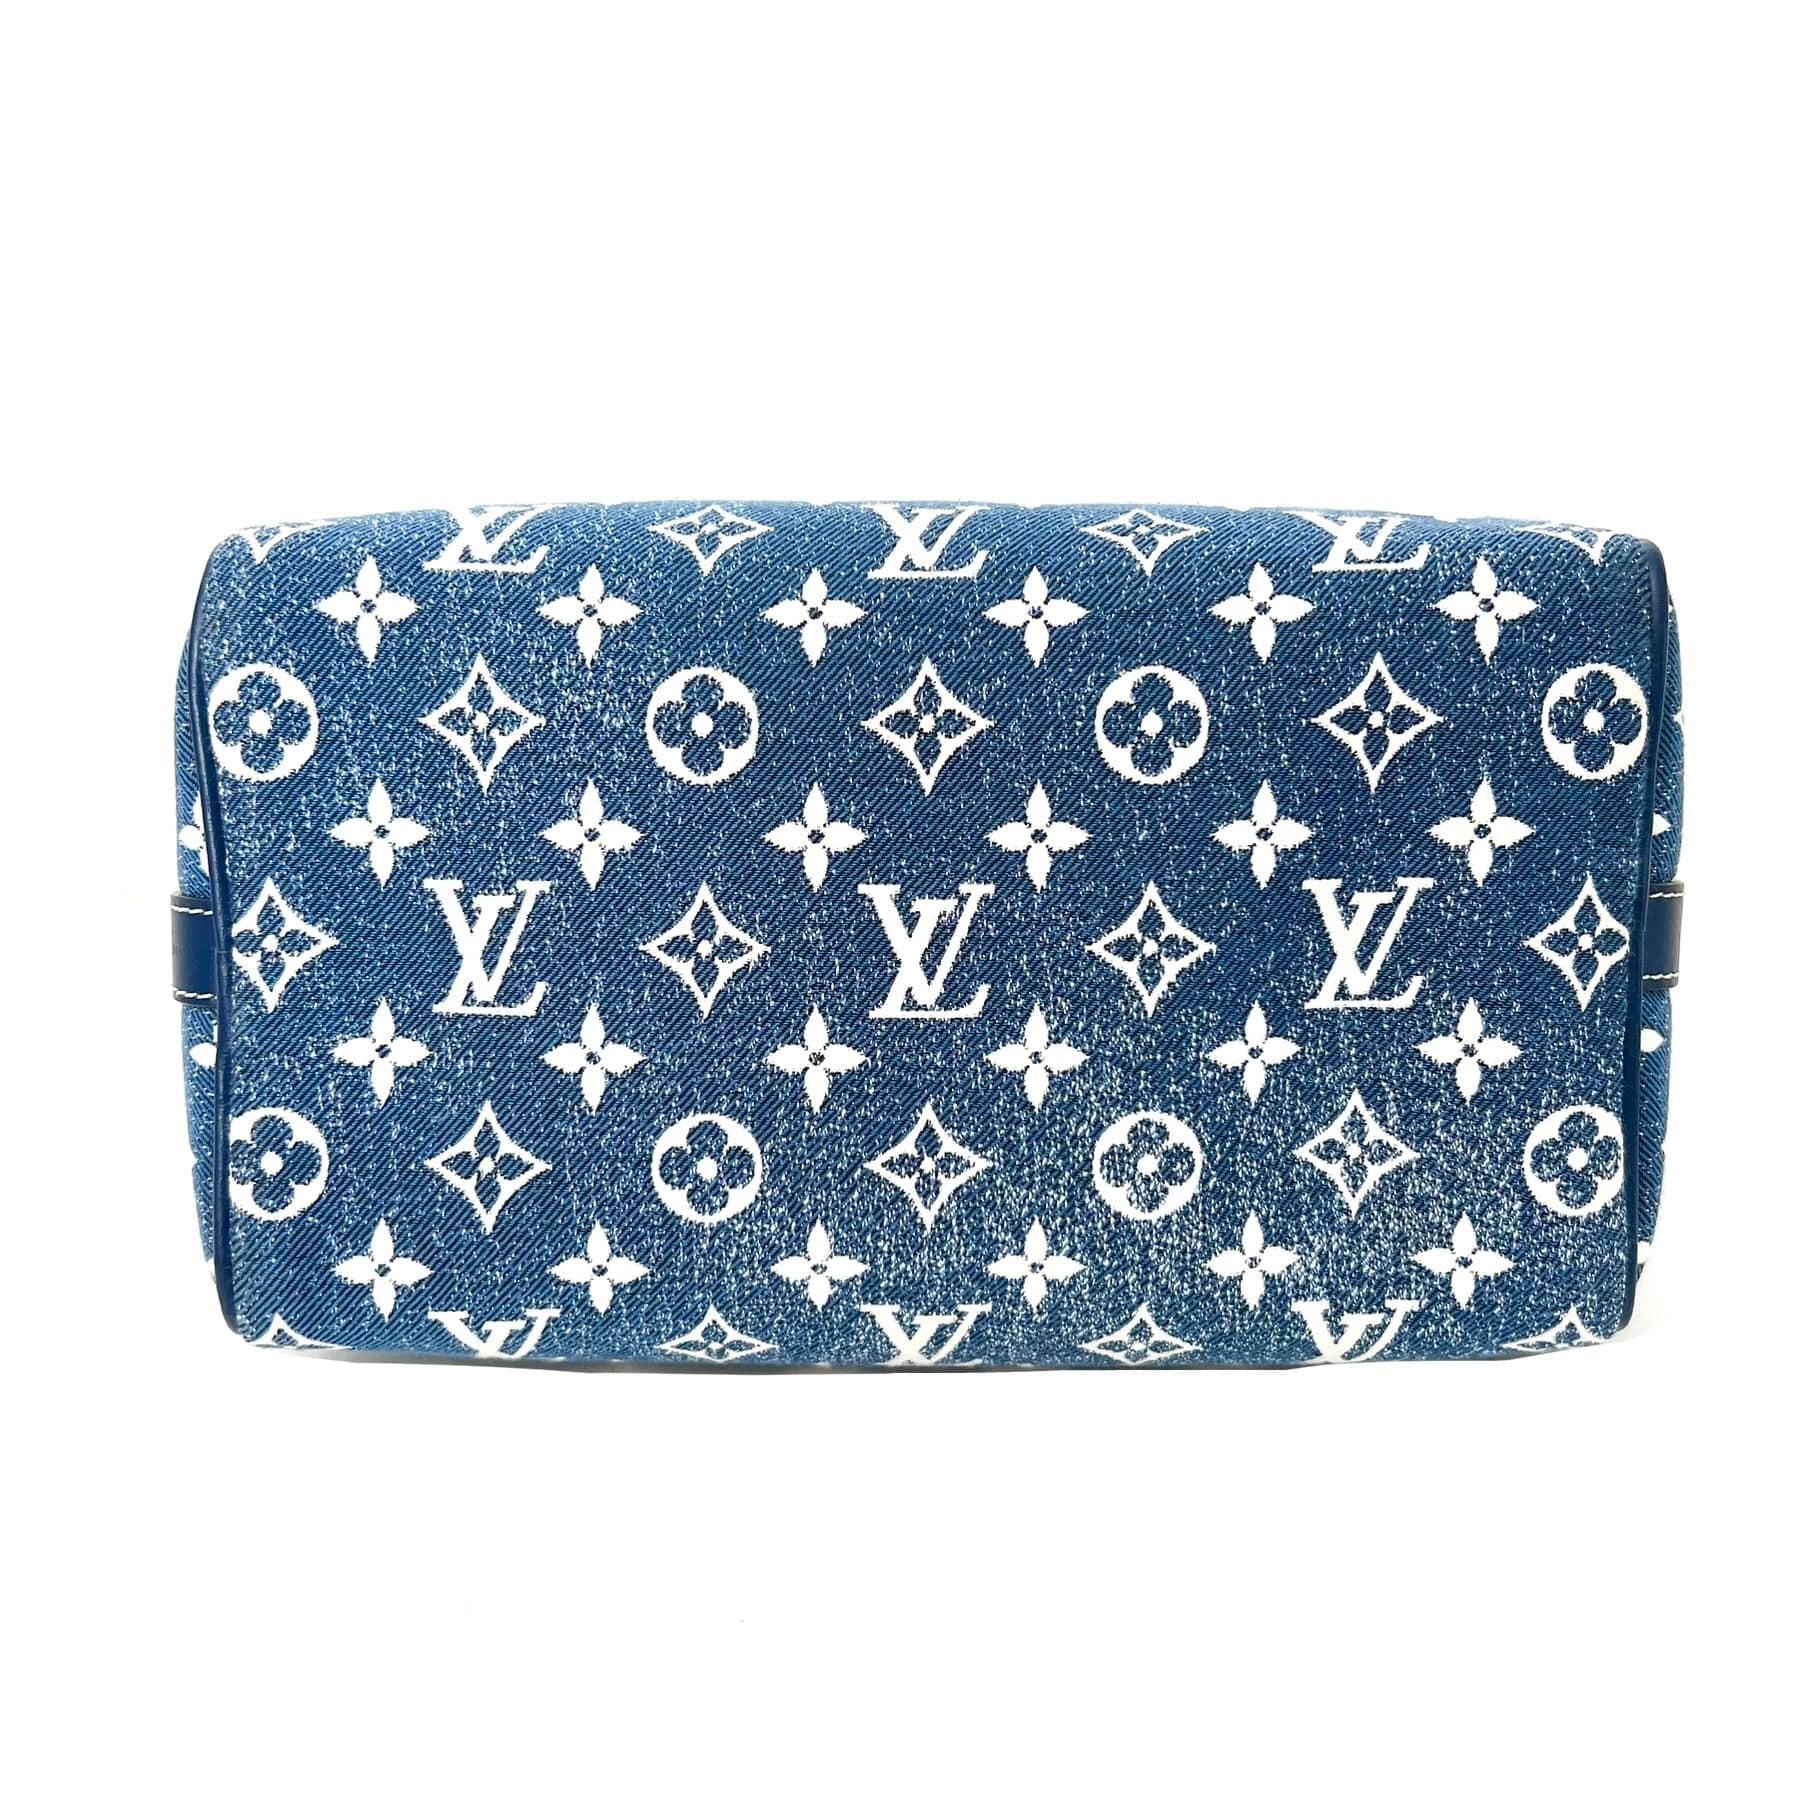 Louis Vuitton Limited Edition Speedy Bandouliere 25 Denim Blue GHW (Ne